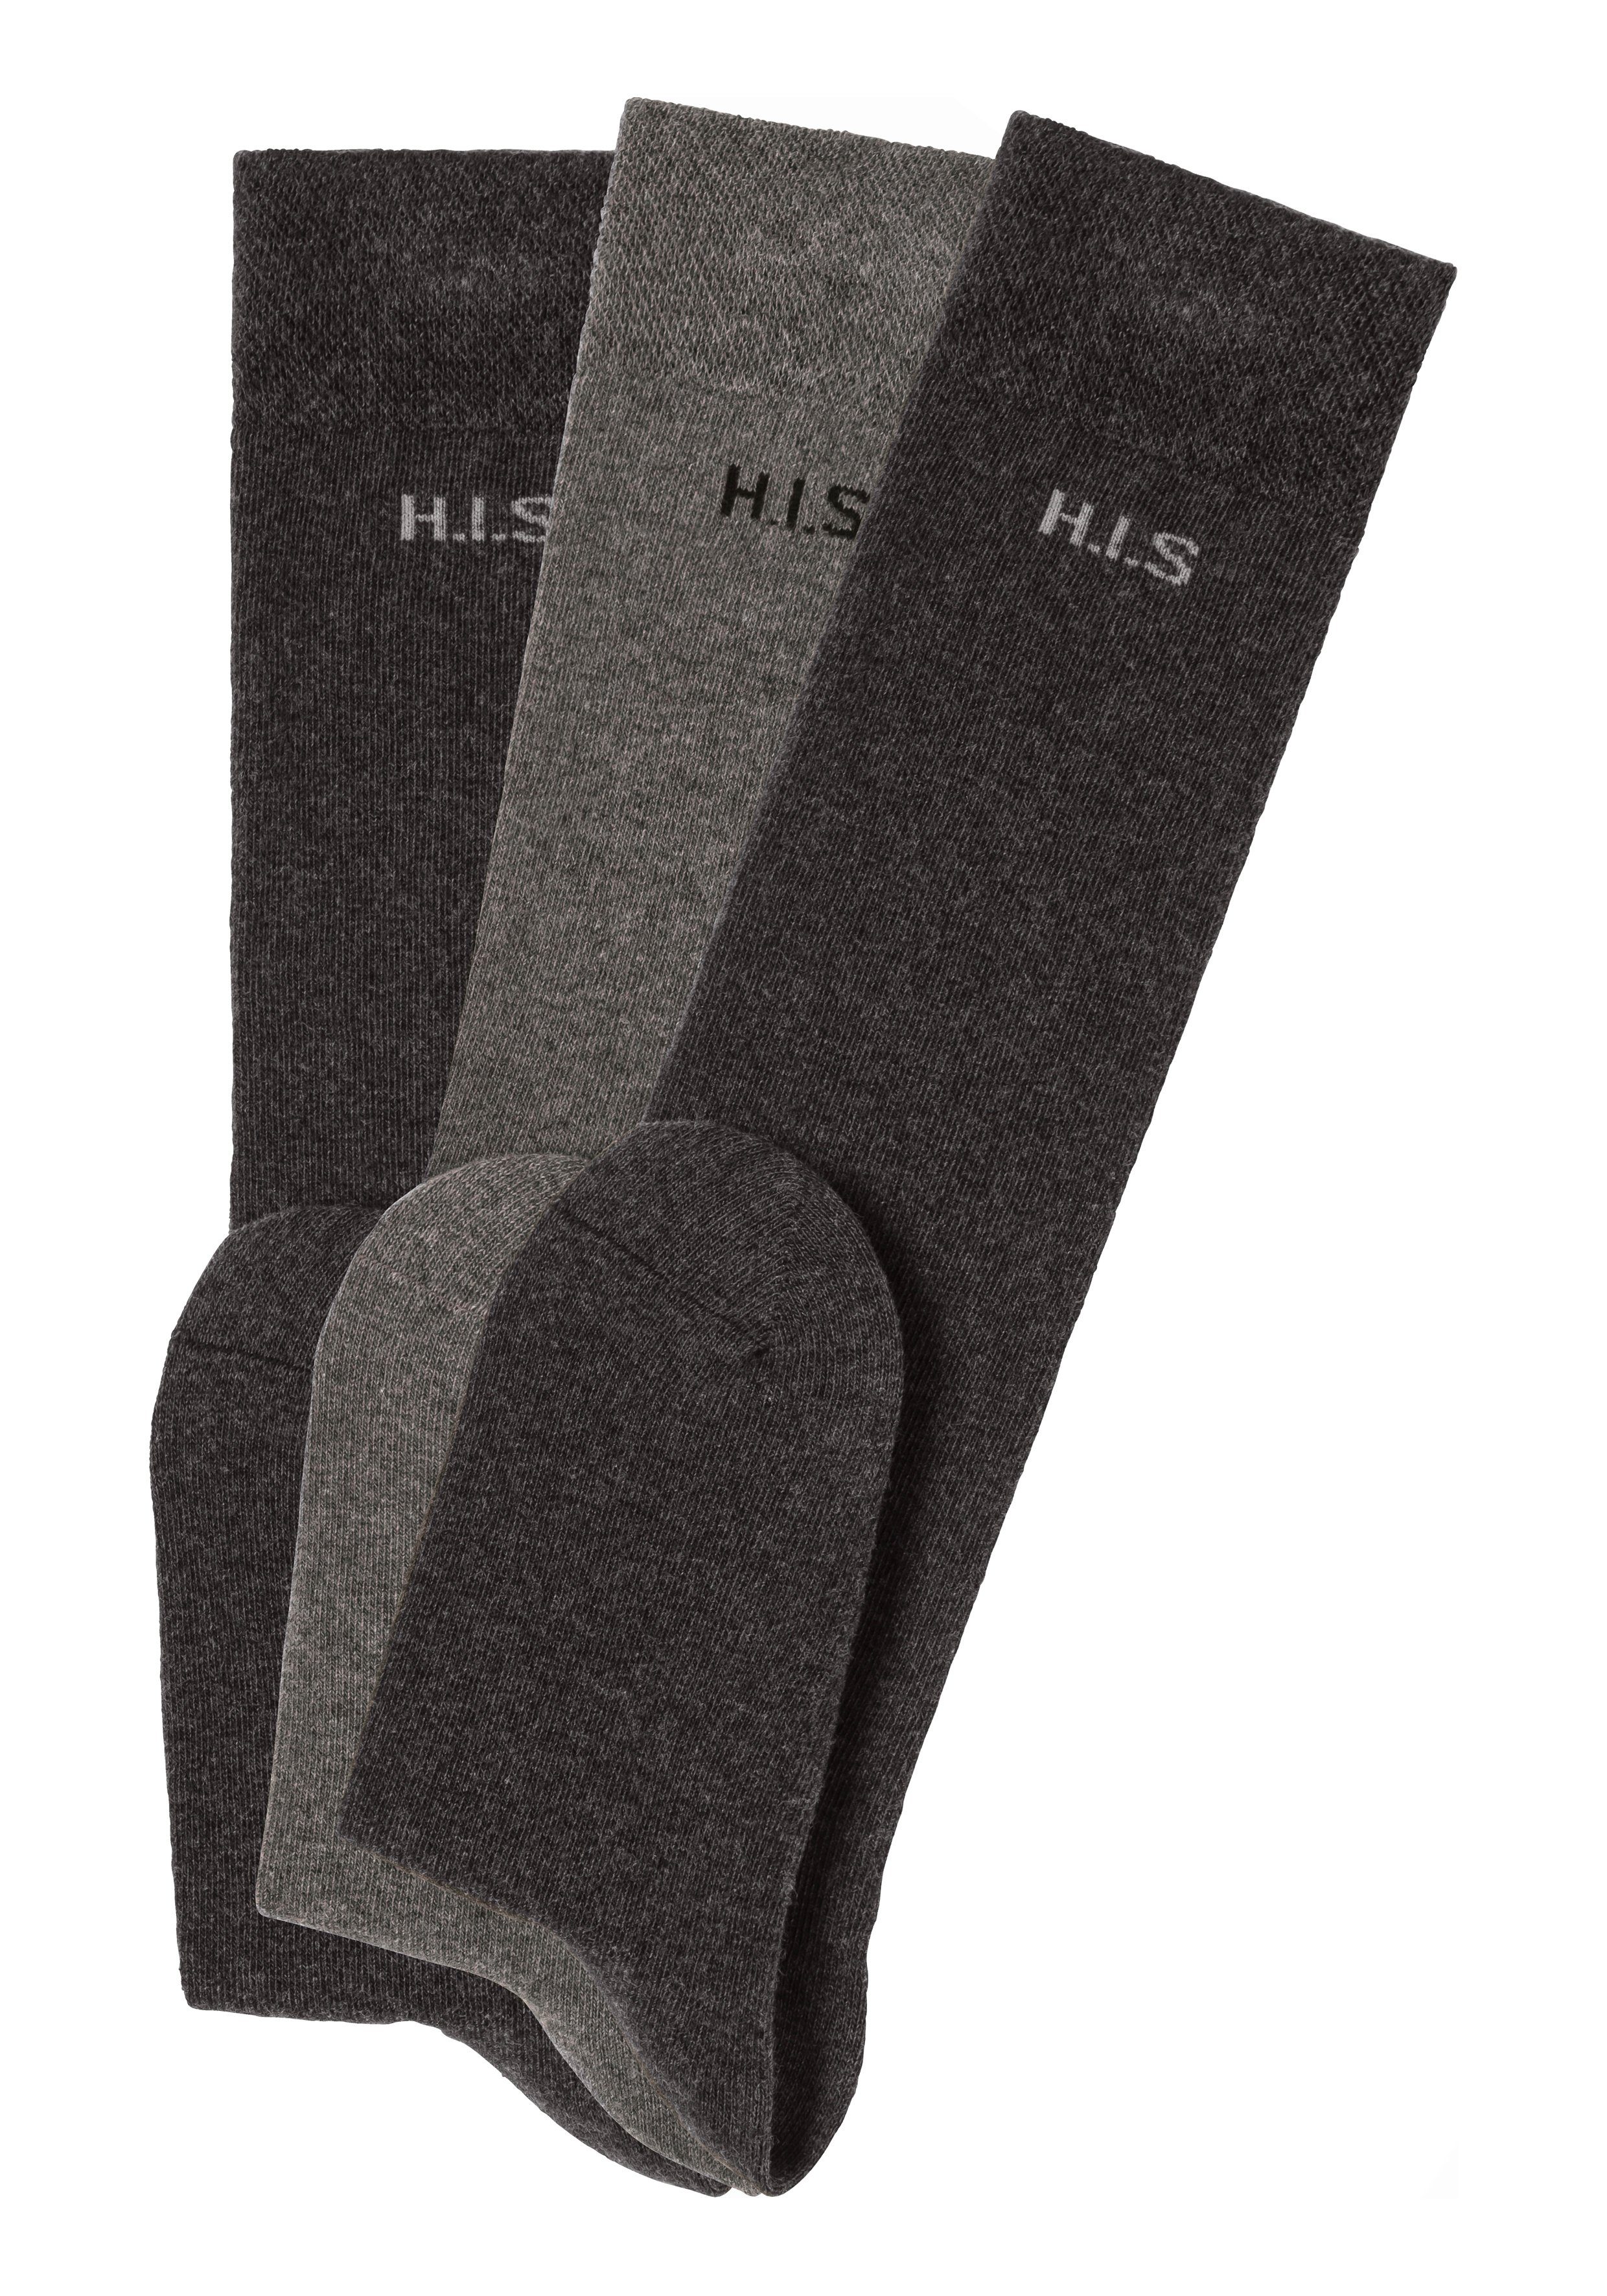 H.I.S Kniestrümpfe ohne (3-Paar) Bündchen anthrazit-grau einschneidendes